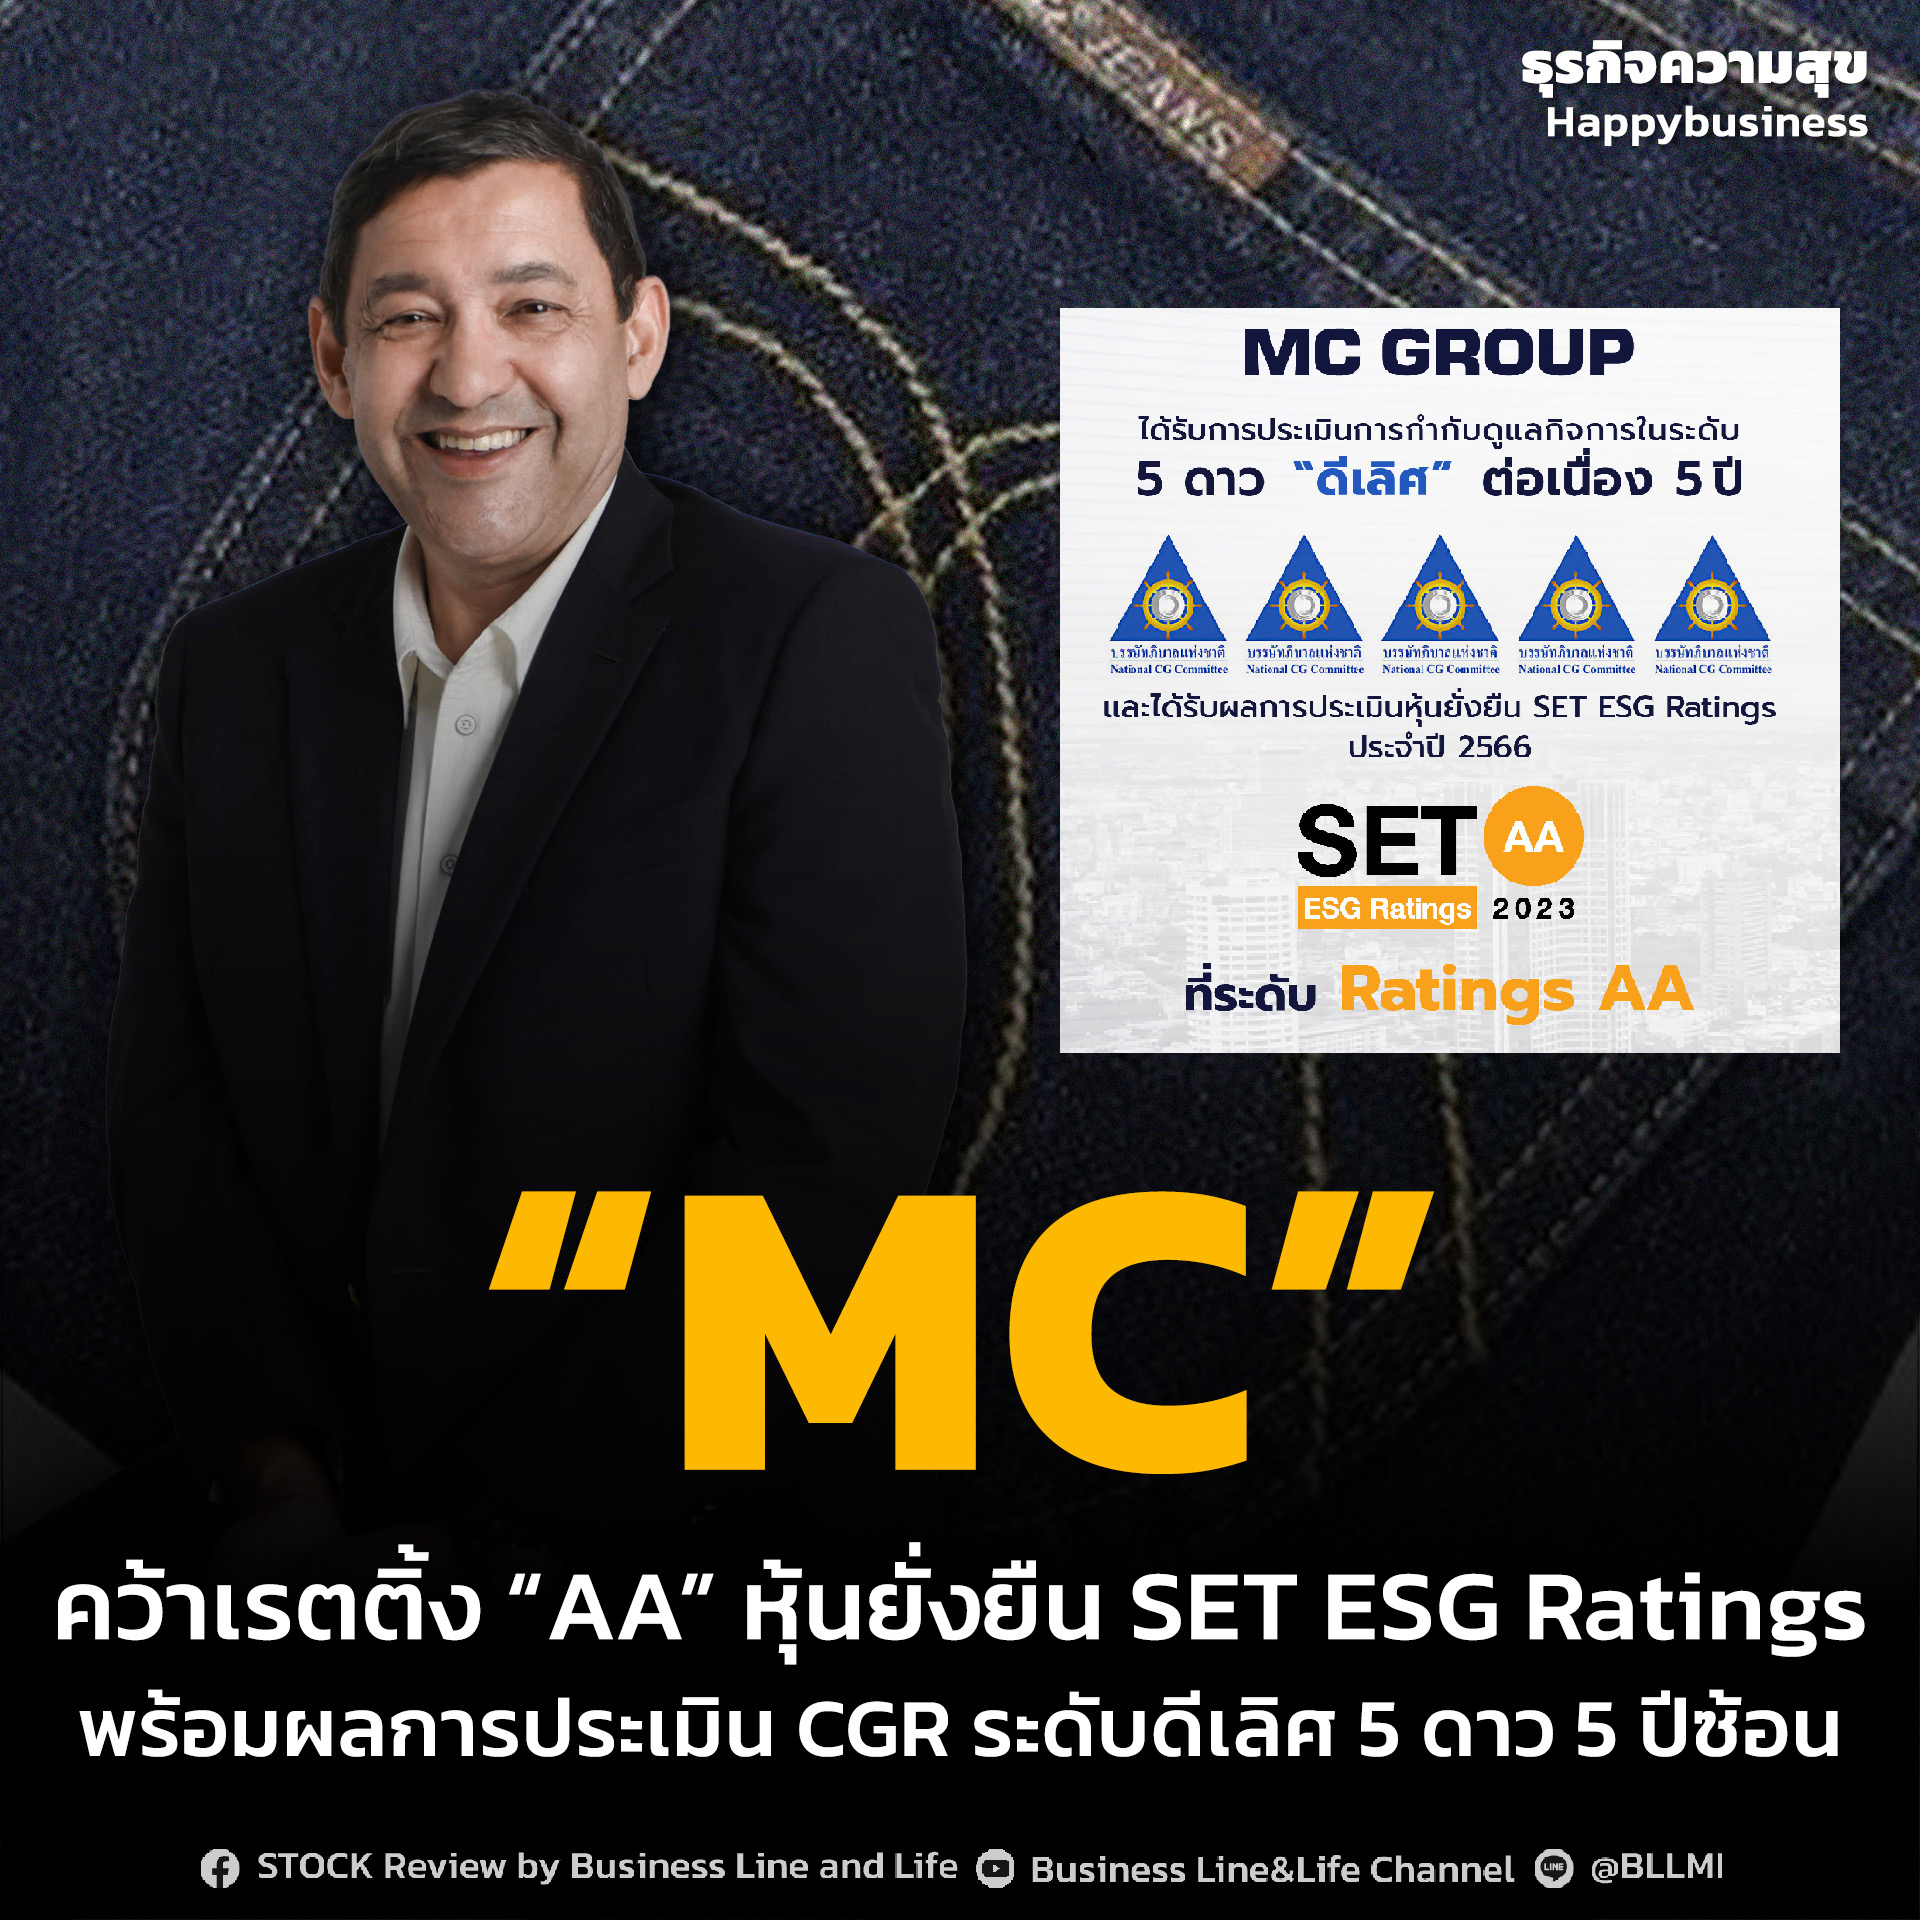 “MC” คว้าเรตติ้ง “AA” หุ้นยั่งยืน SET ESG Ratings พร้อมผลการประเมิน CGR ระดับดีเลิศ 5 ดาว 5 ปีซ้อน